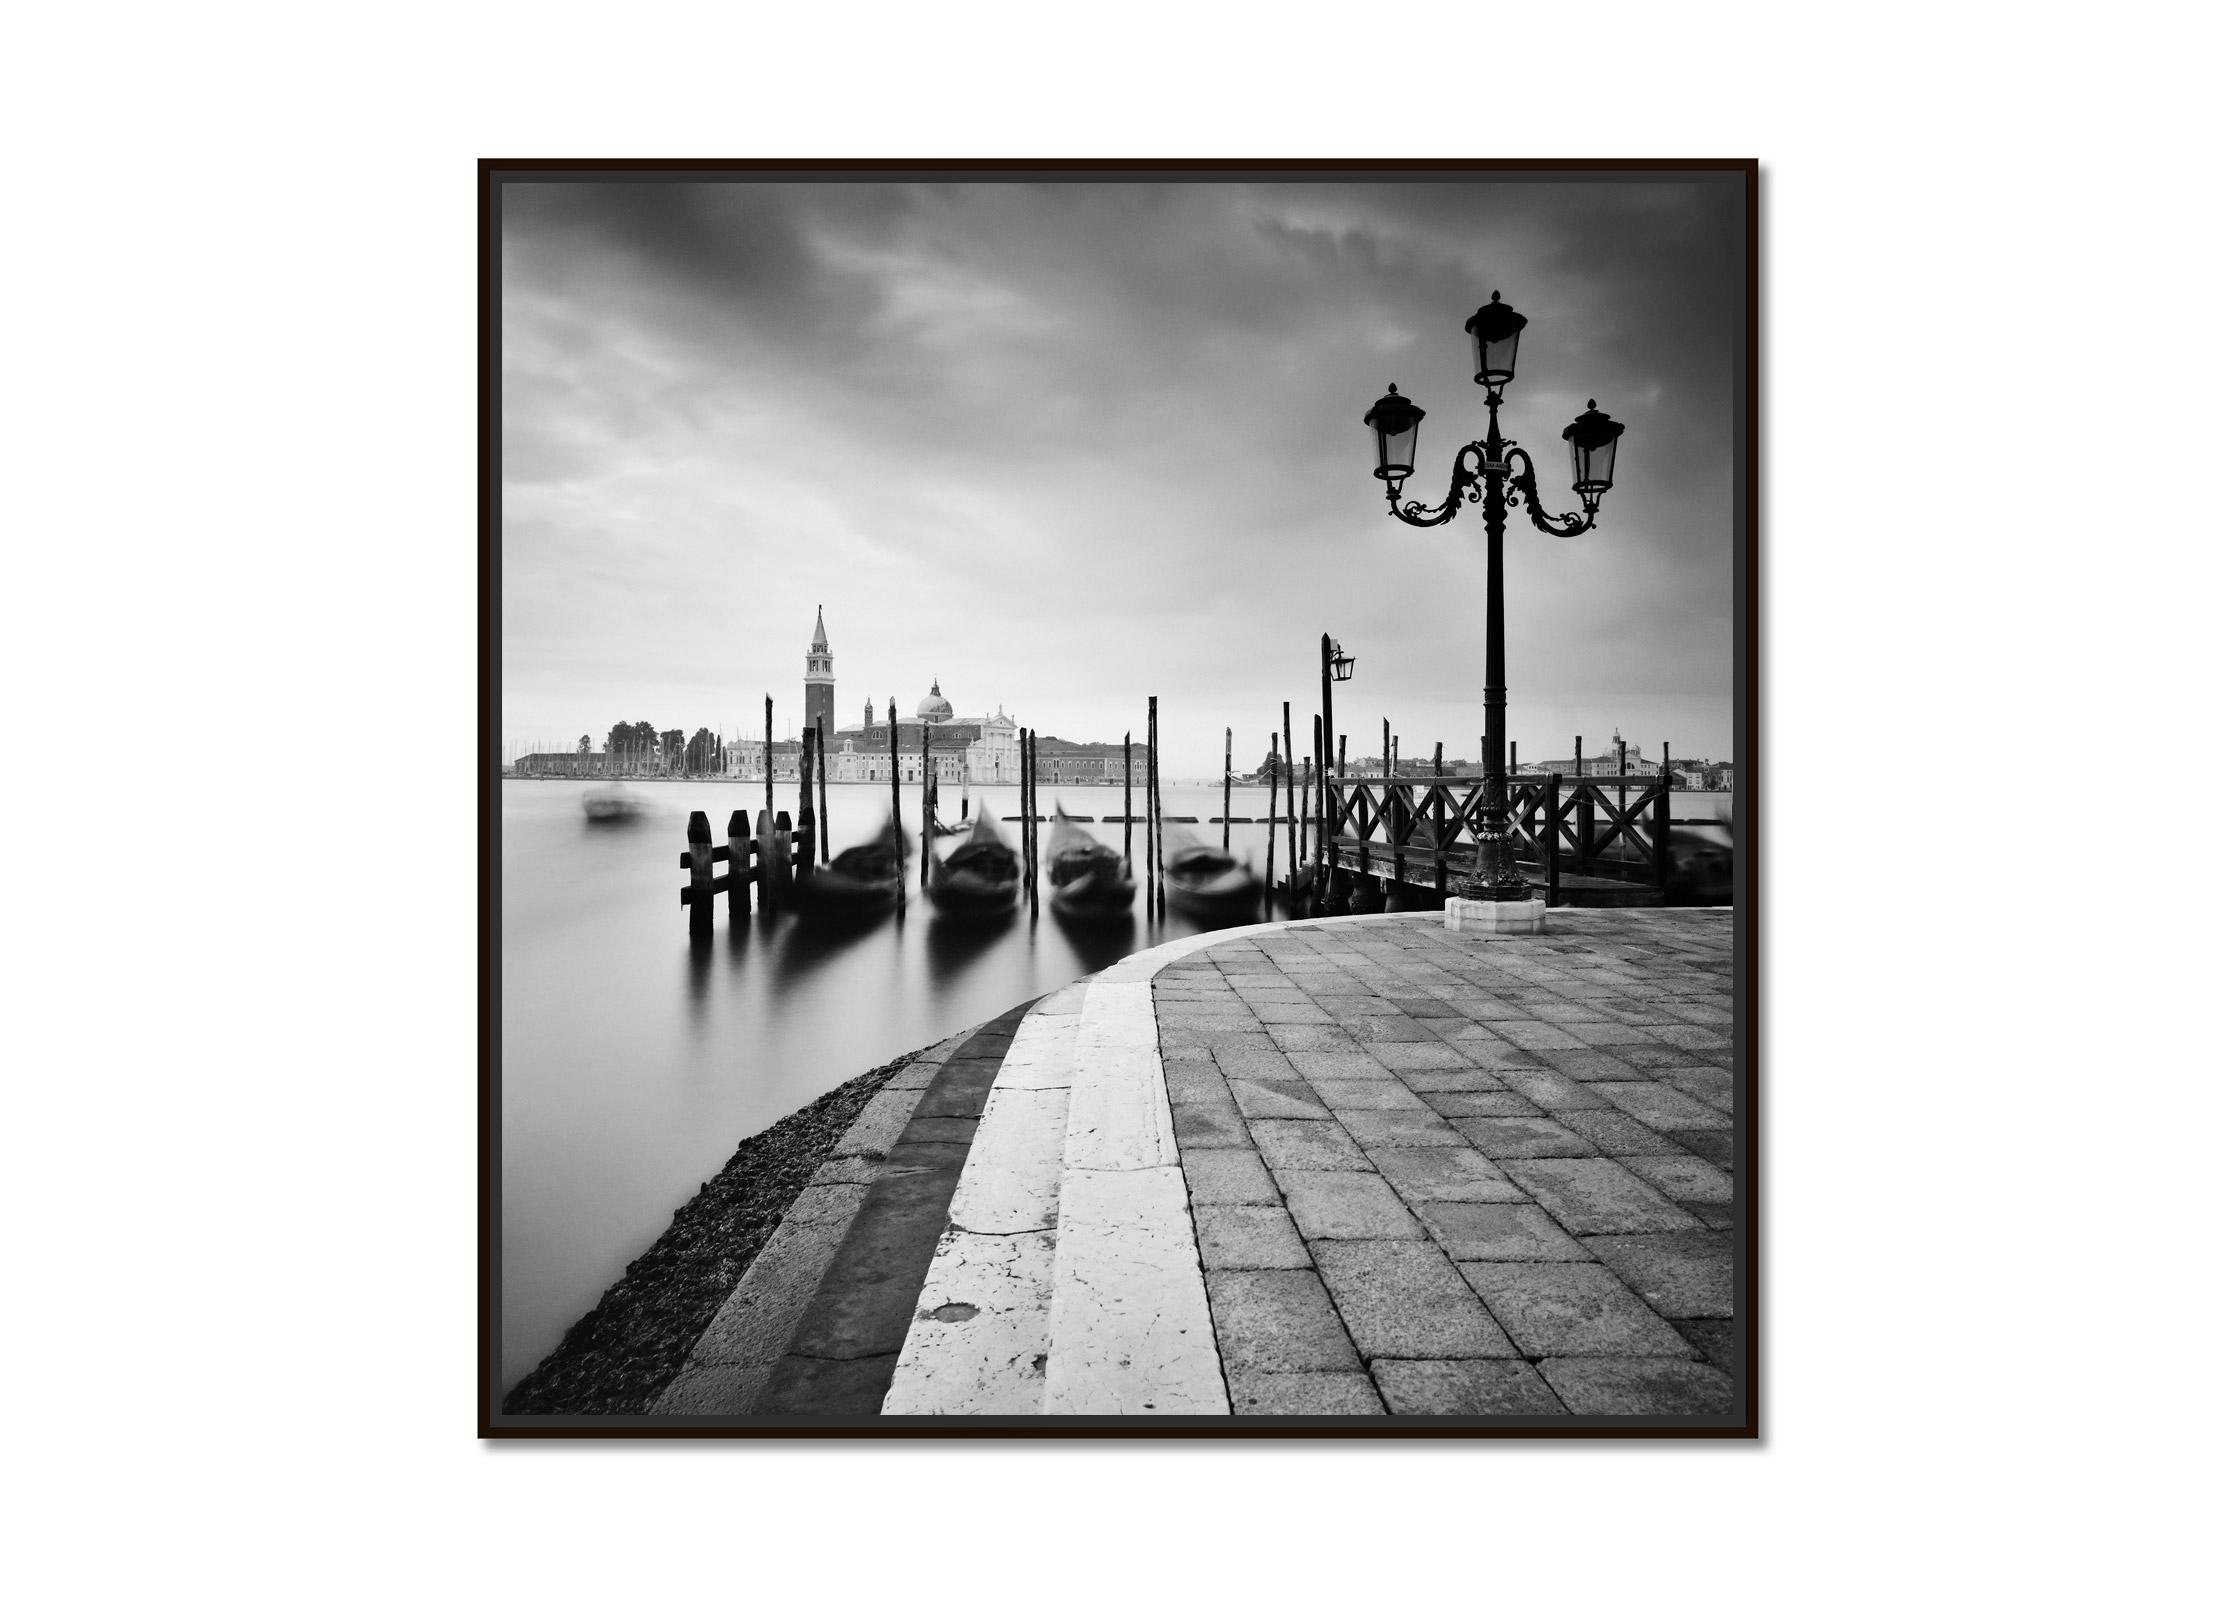   Basilica di San Giorgio Maggiore, black and white photography, art cityscape - Photograph by Gerald Berghammer